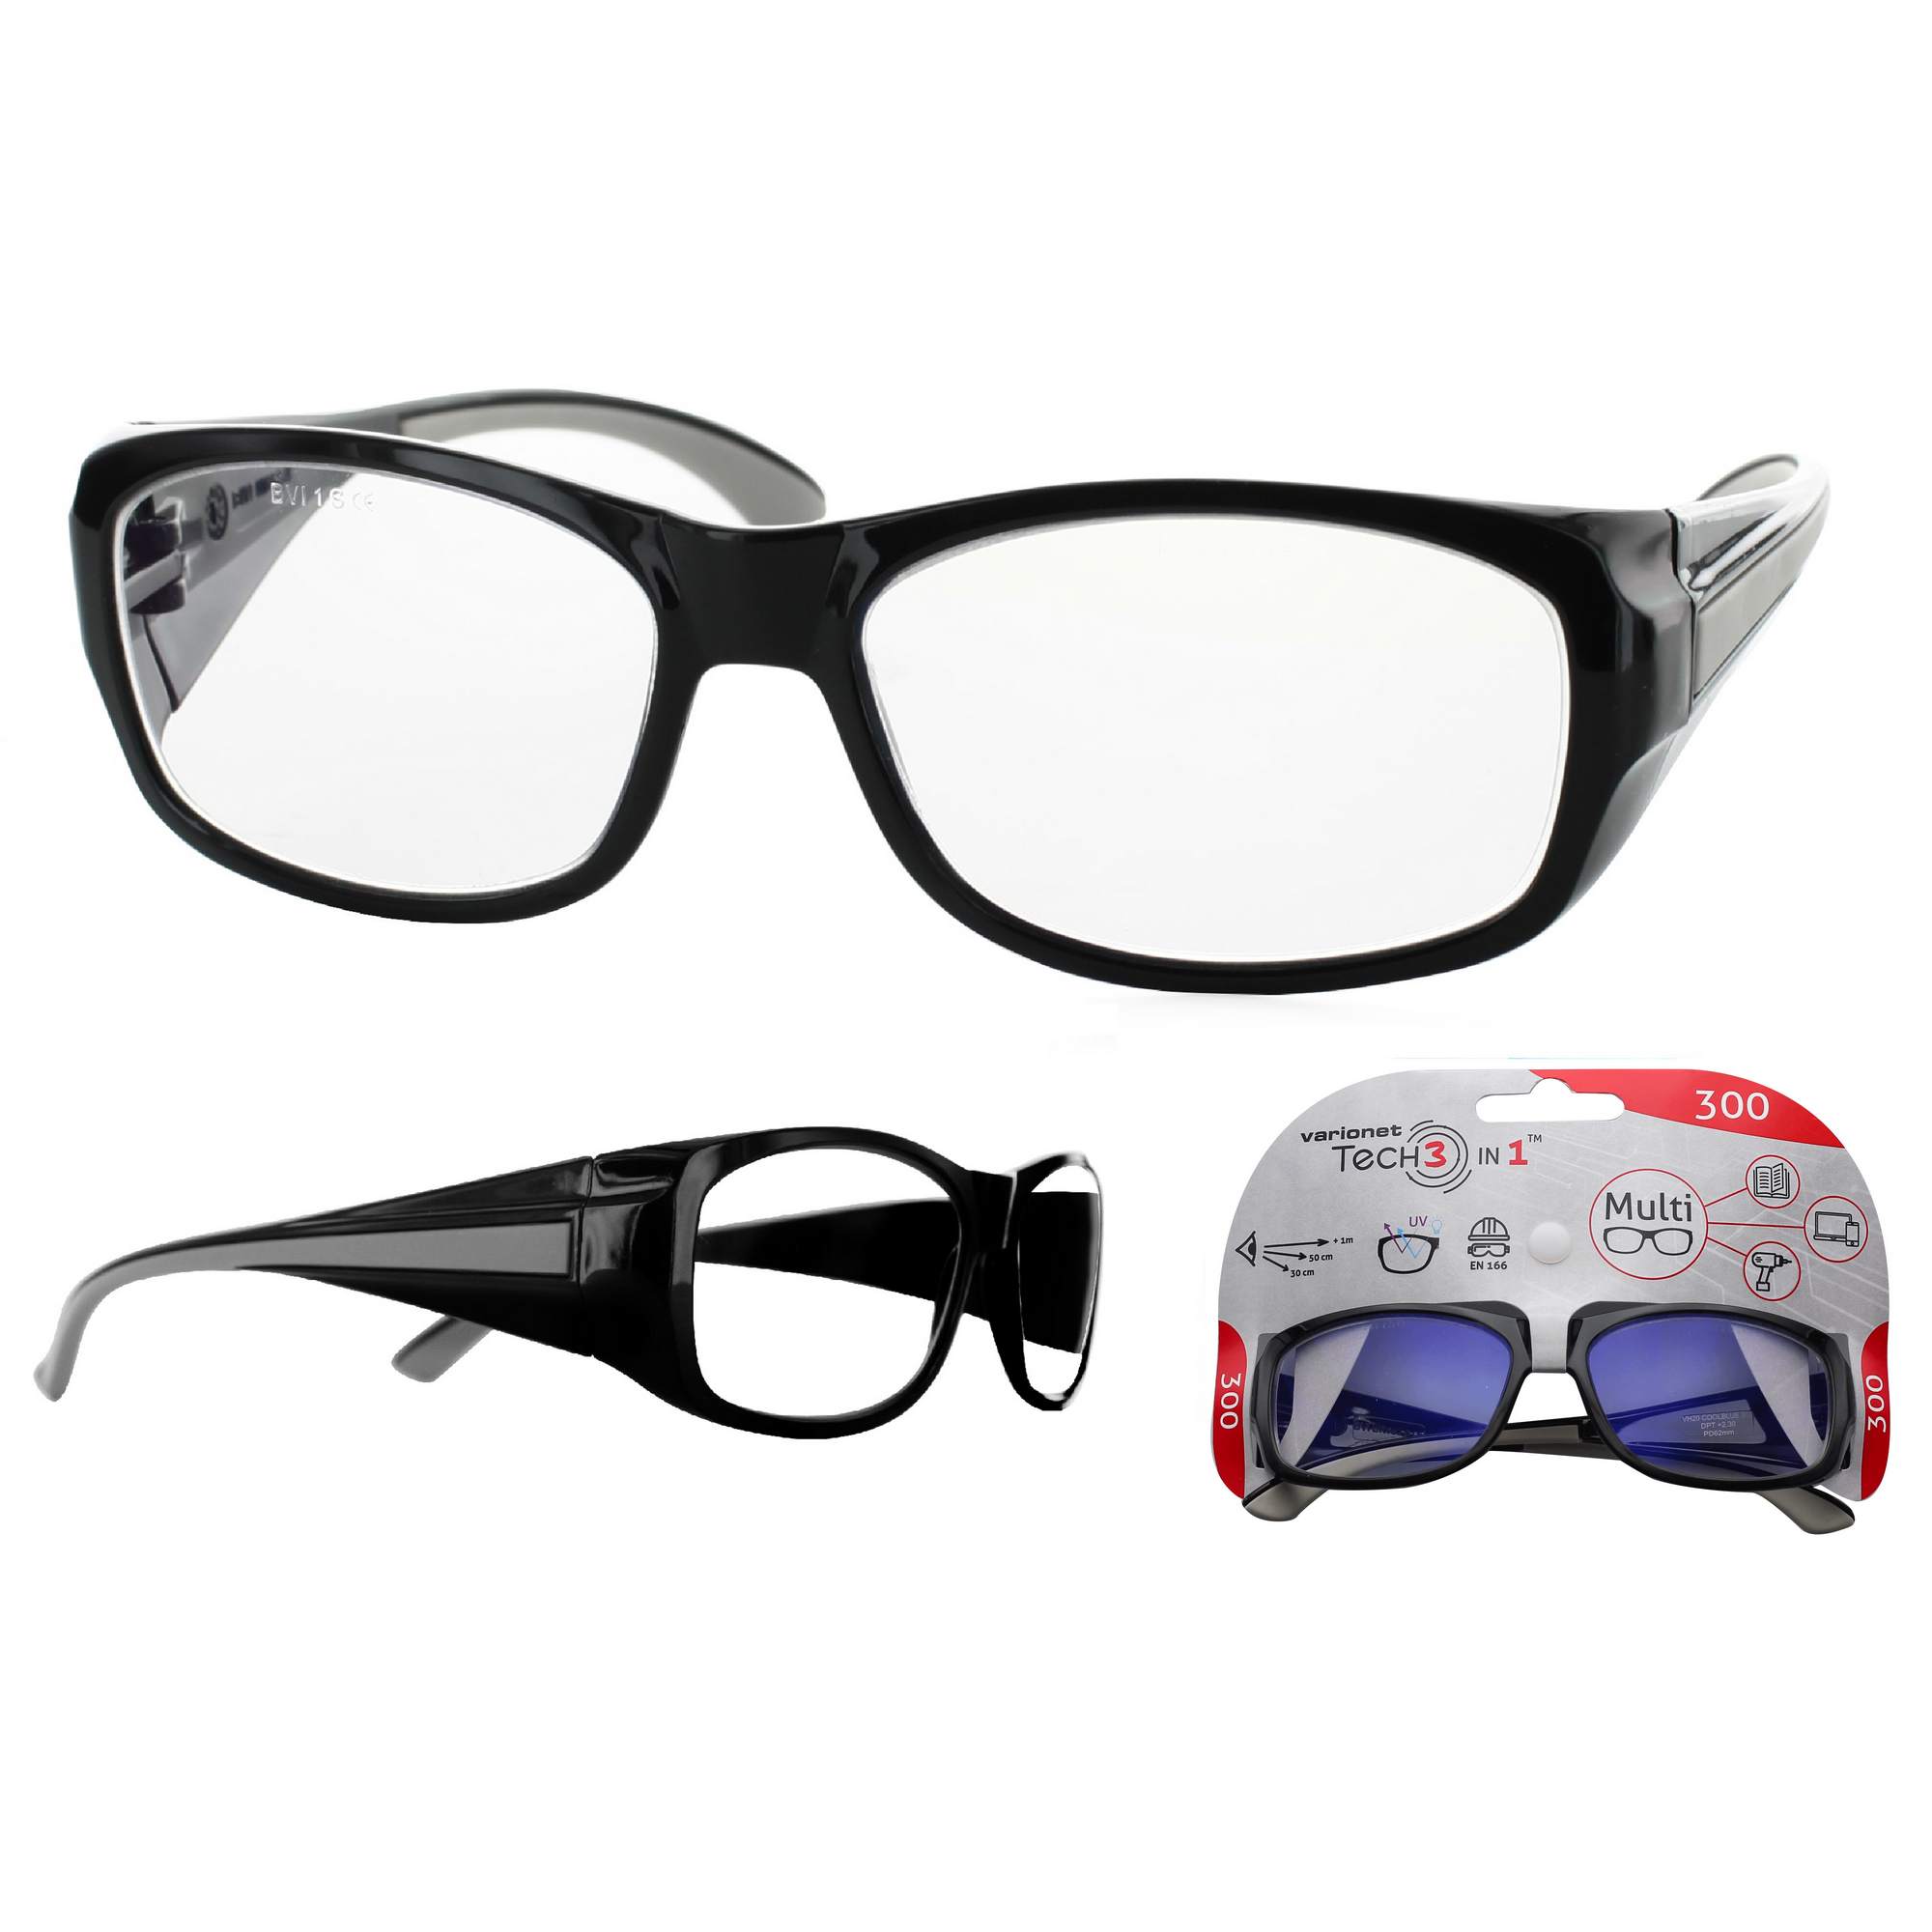 Multidistanz-Schutzbrille 'Tech 3in1 300' schwarz + 3,00 Dioptrien + product picture